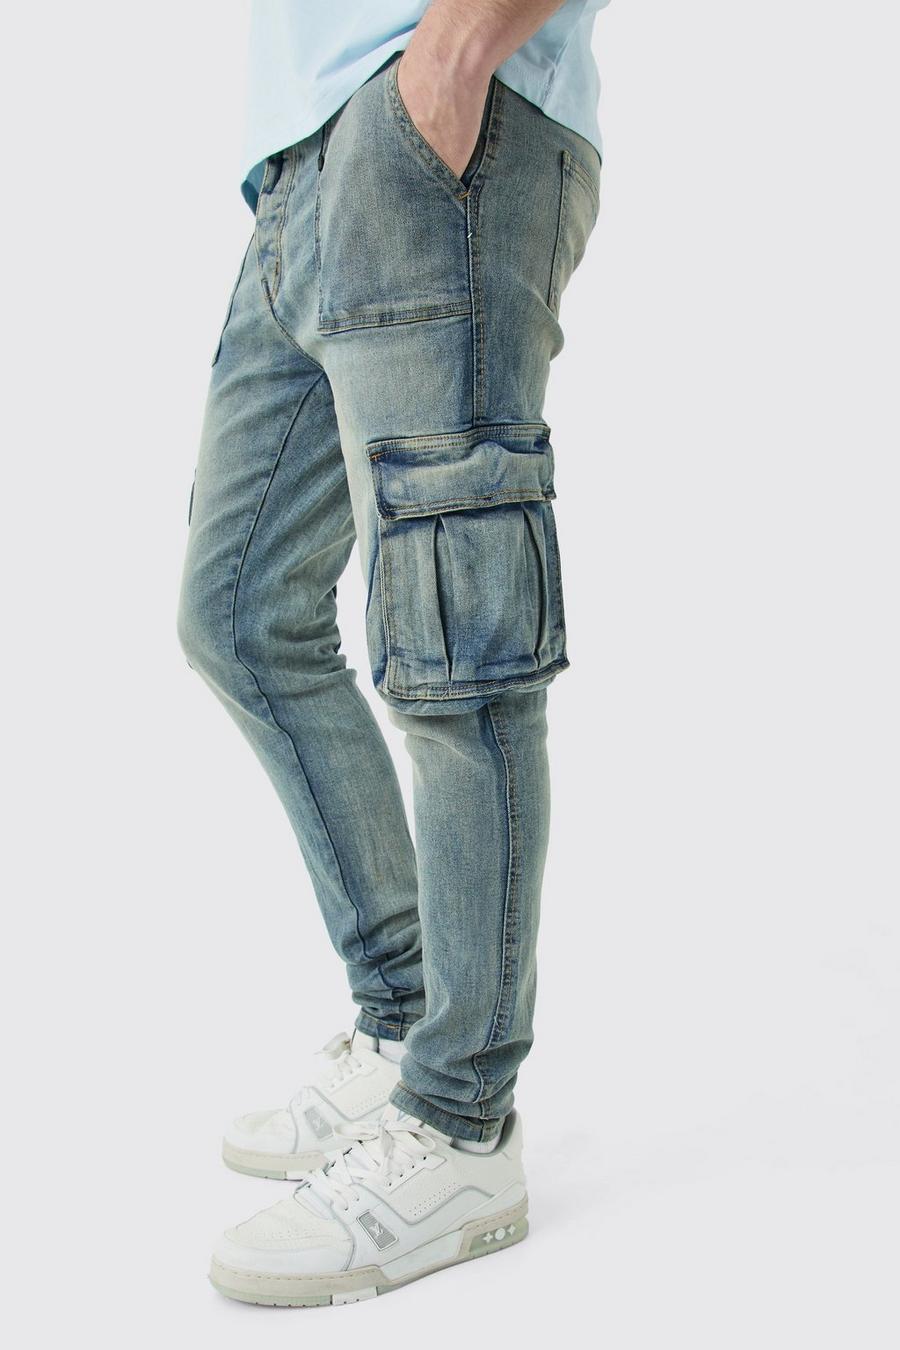 Jeans Cargo Tall Skinny Fit da uomo con dettagli stile lavoro, Antique blue